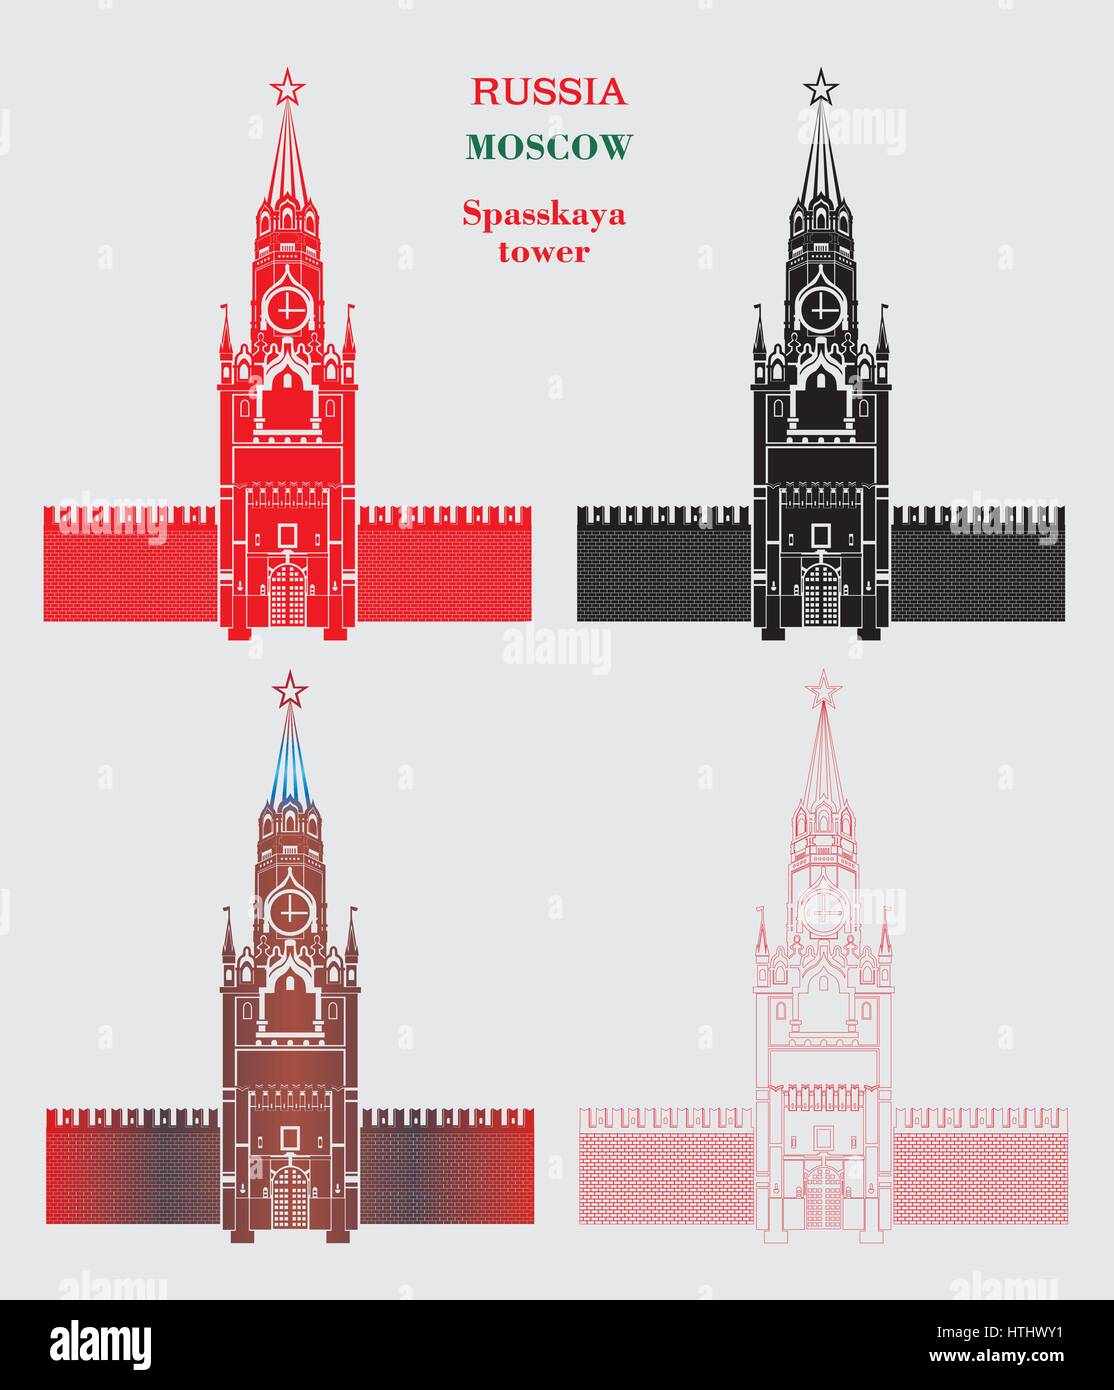 Mettre en quatre couleurs (rouge, noir , blanc coloré, couleurs) de la tour Spasskaya du Kremlin de Moscou sur fond gris Illustration de Vecteur